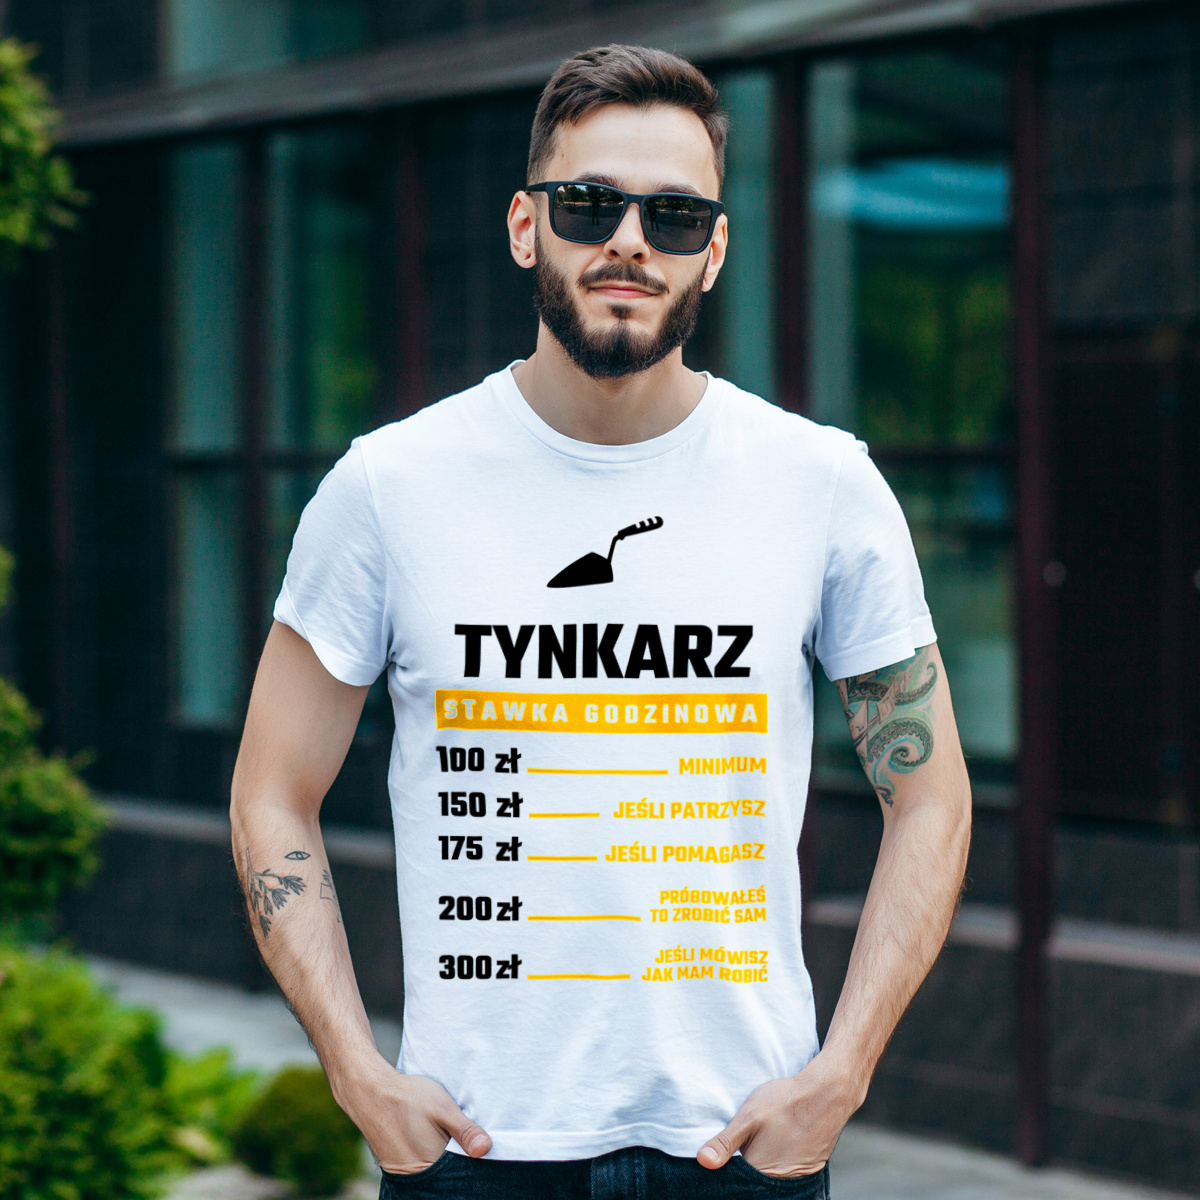 Stawka Godzinowa Tynkarz - Męska Koszulka Biała